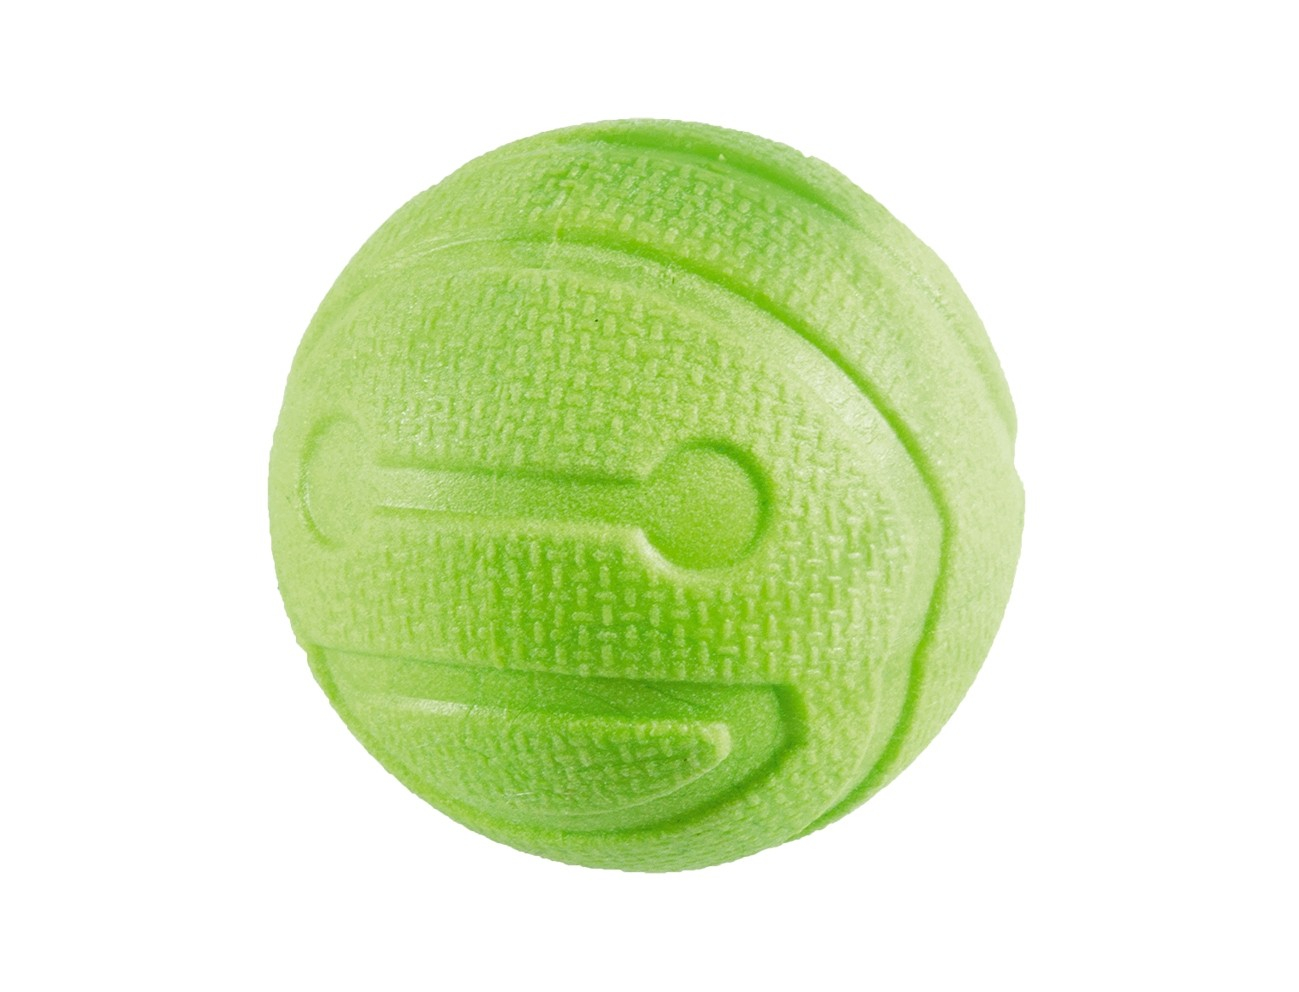 Geparfumeerde TPR bal, 6 cm